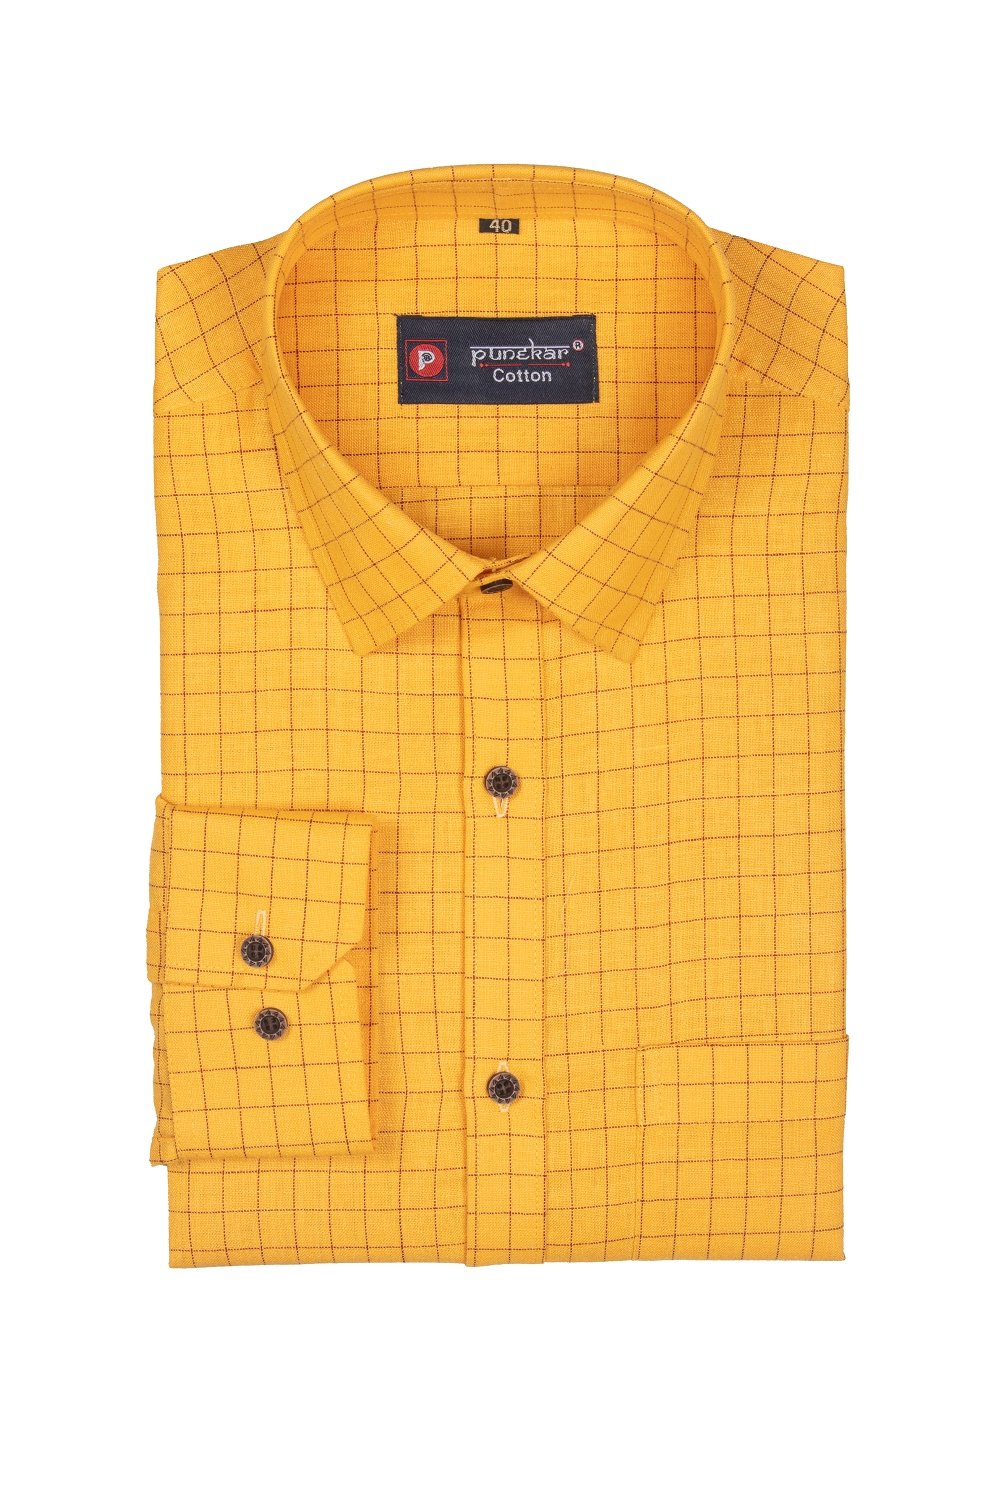 Punekar Cotton Maize Color Check Criss Cross Woven Cotton Shirt for Men&